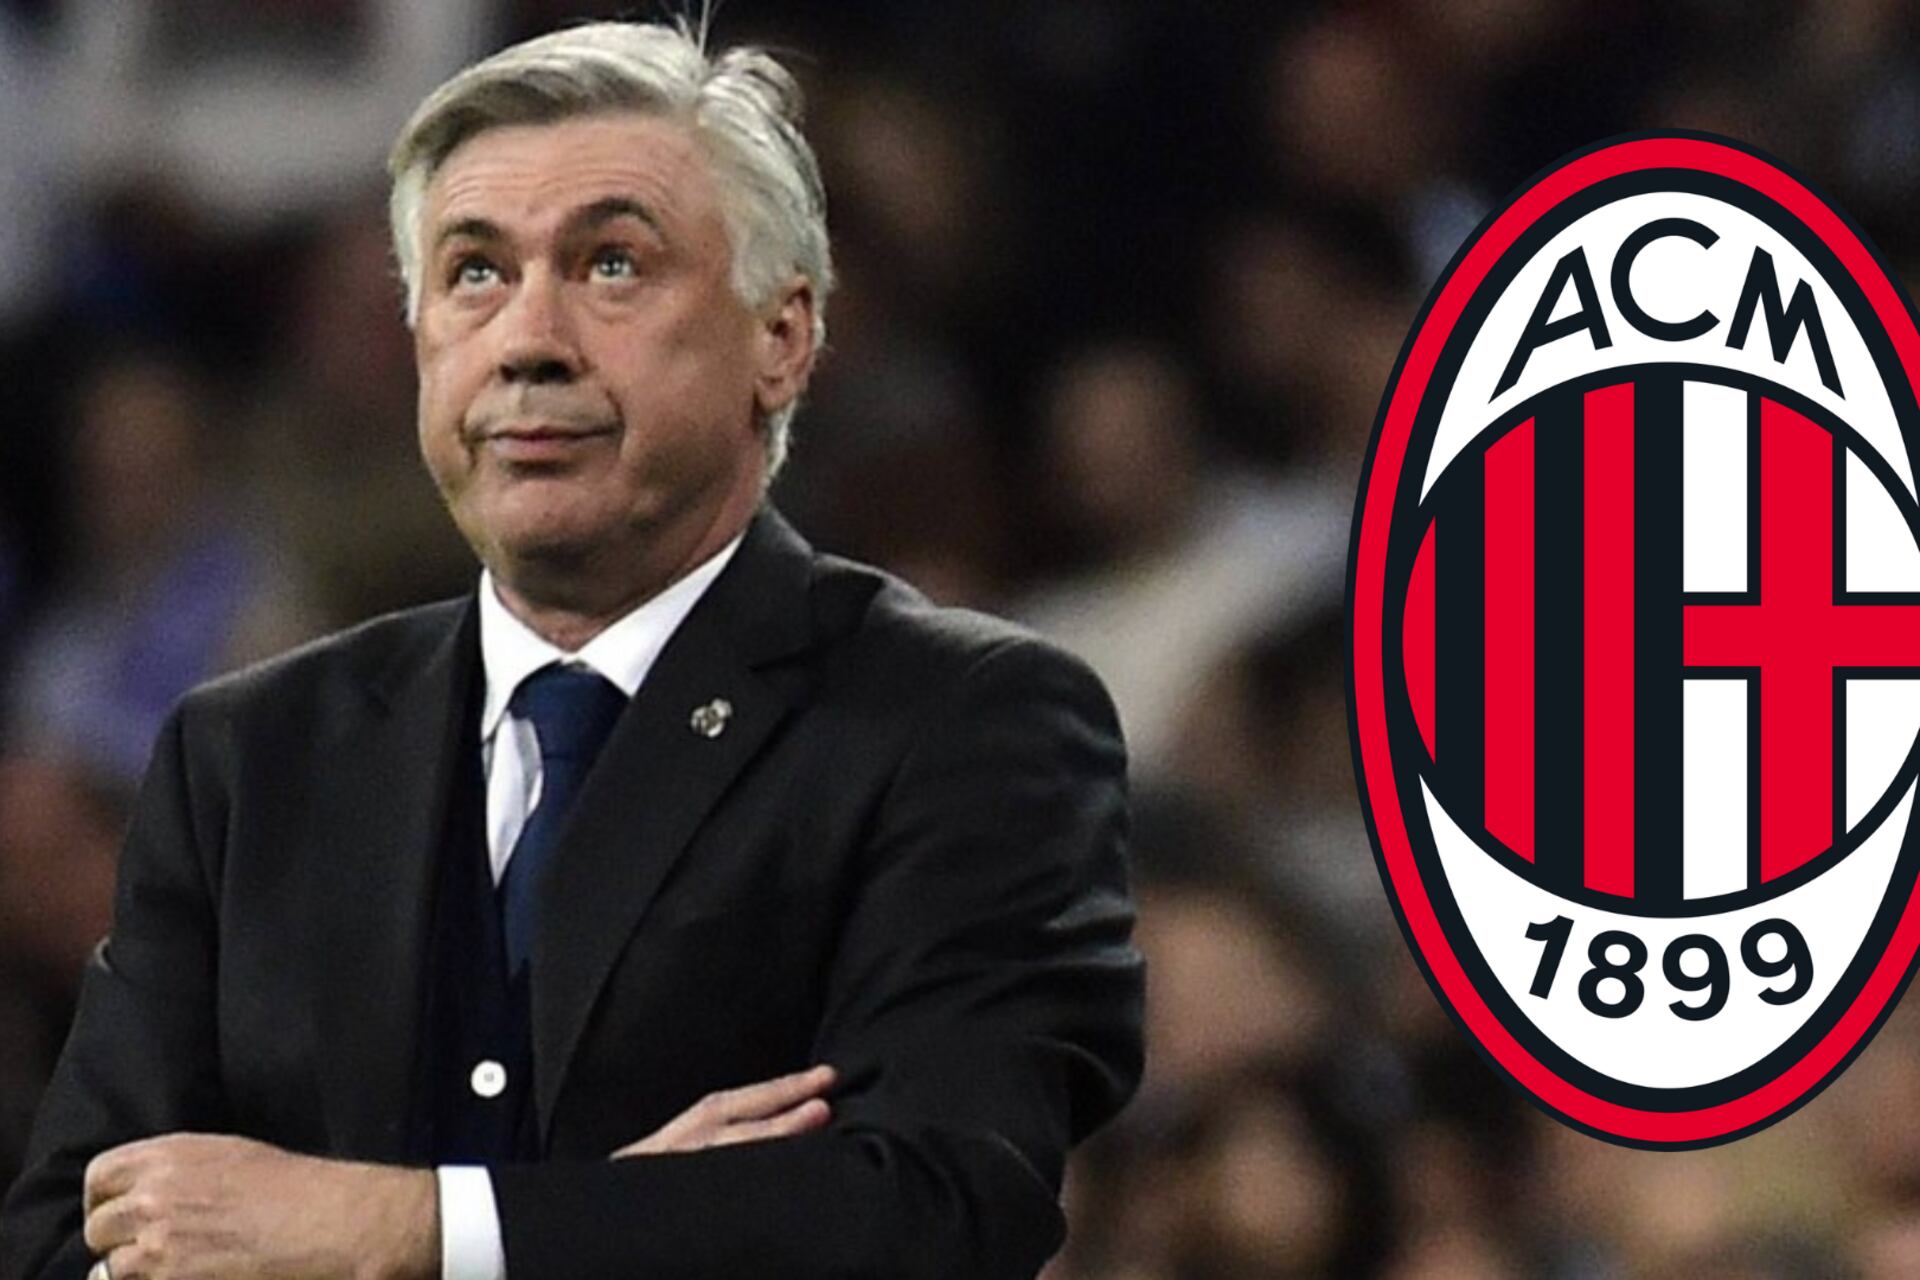 Ancelotti lo traicionó y negó ir a Atleti, Milán lo lleva tras perder el Scudetto